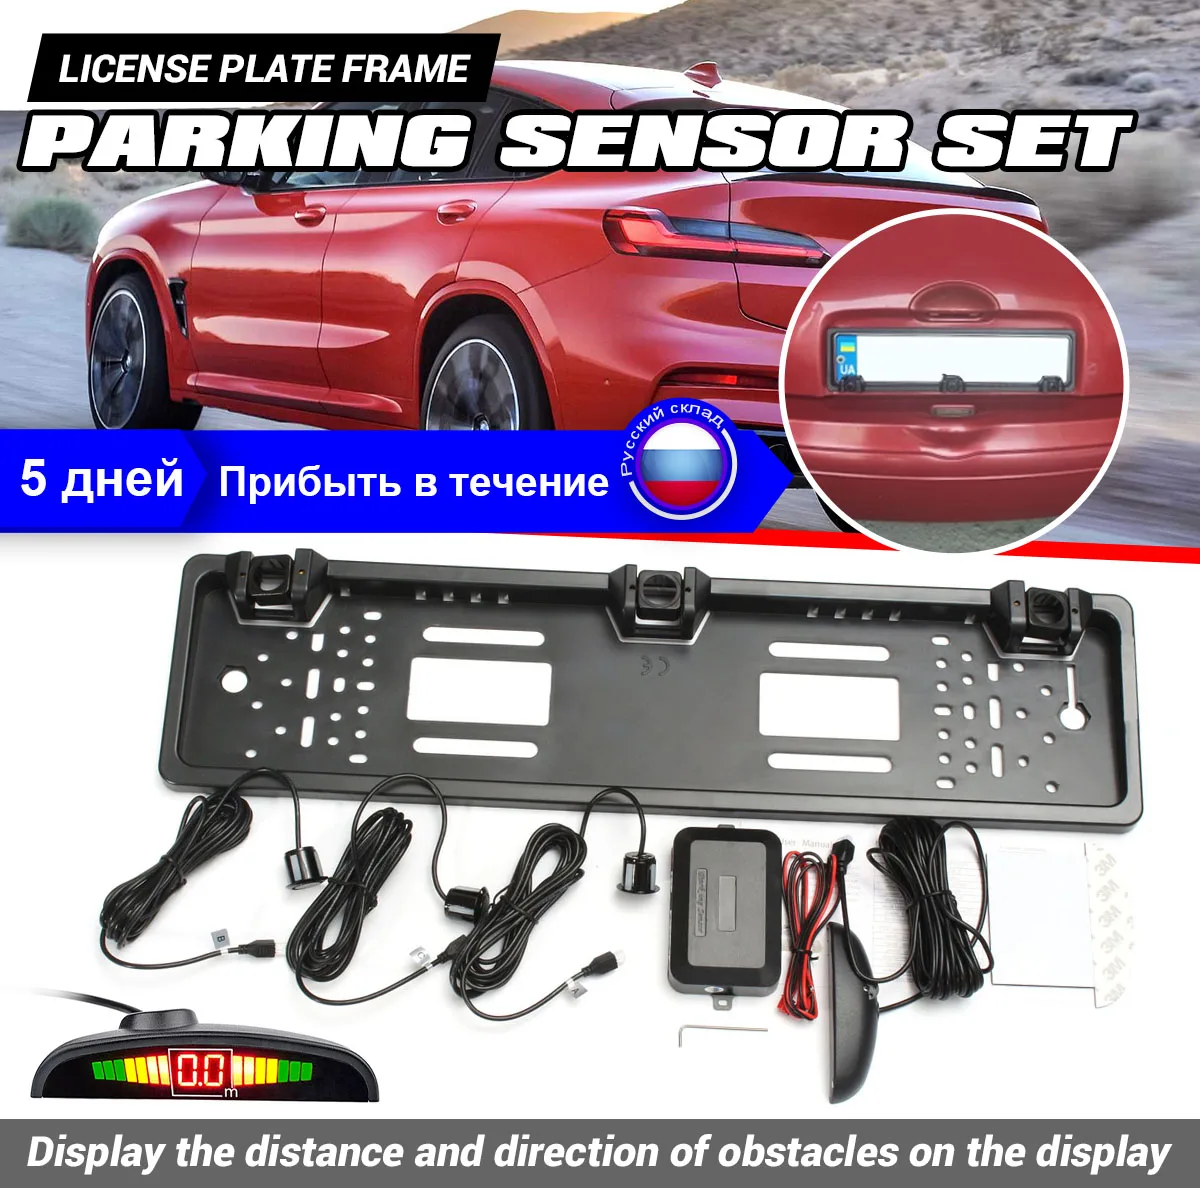 

Универсальный автомобильный парковочные датчики Parktronics рамка для номерного знака европейского стандарта радар заднего хода с 3 датчиками р...